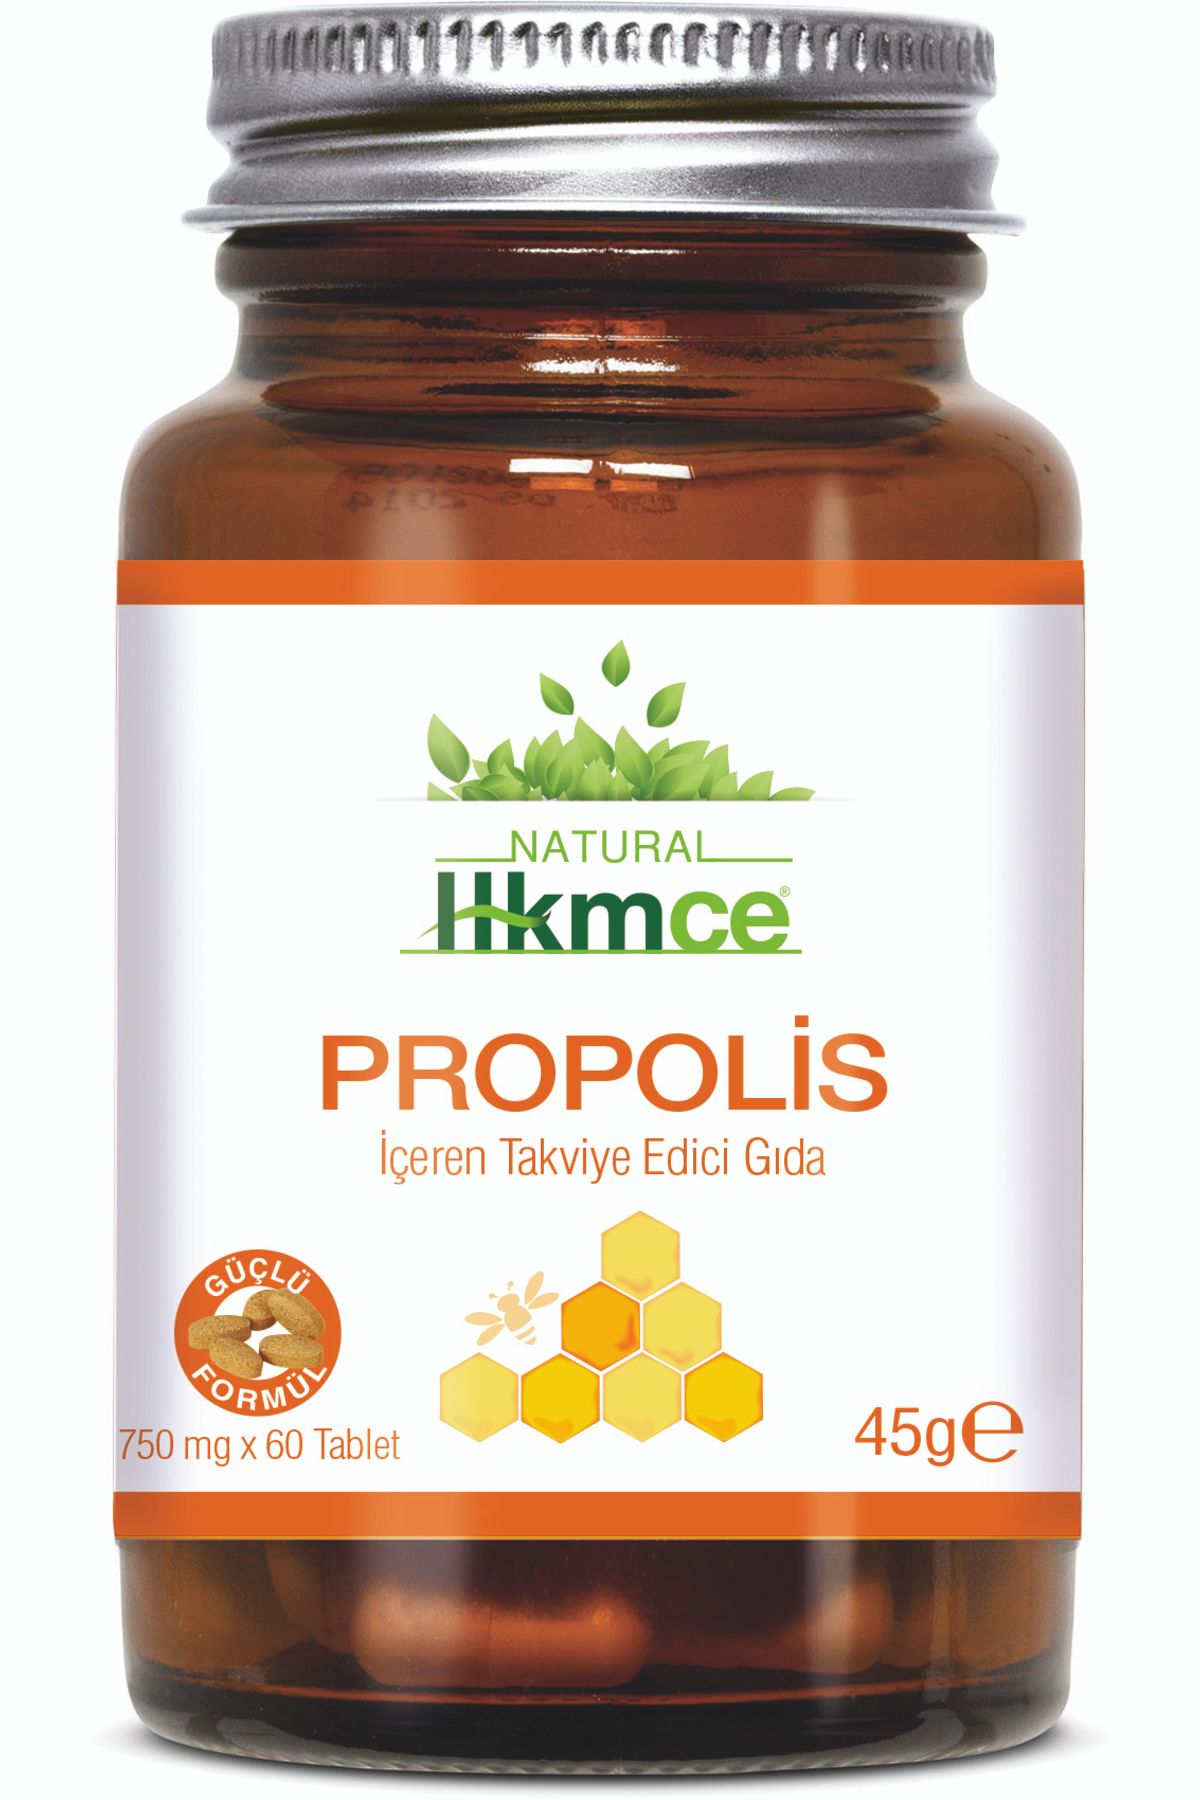 hkmce Propolis 60 Tablet - Güçlü Formül - Natural Hekimce